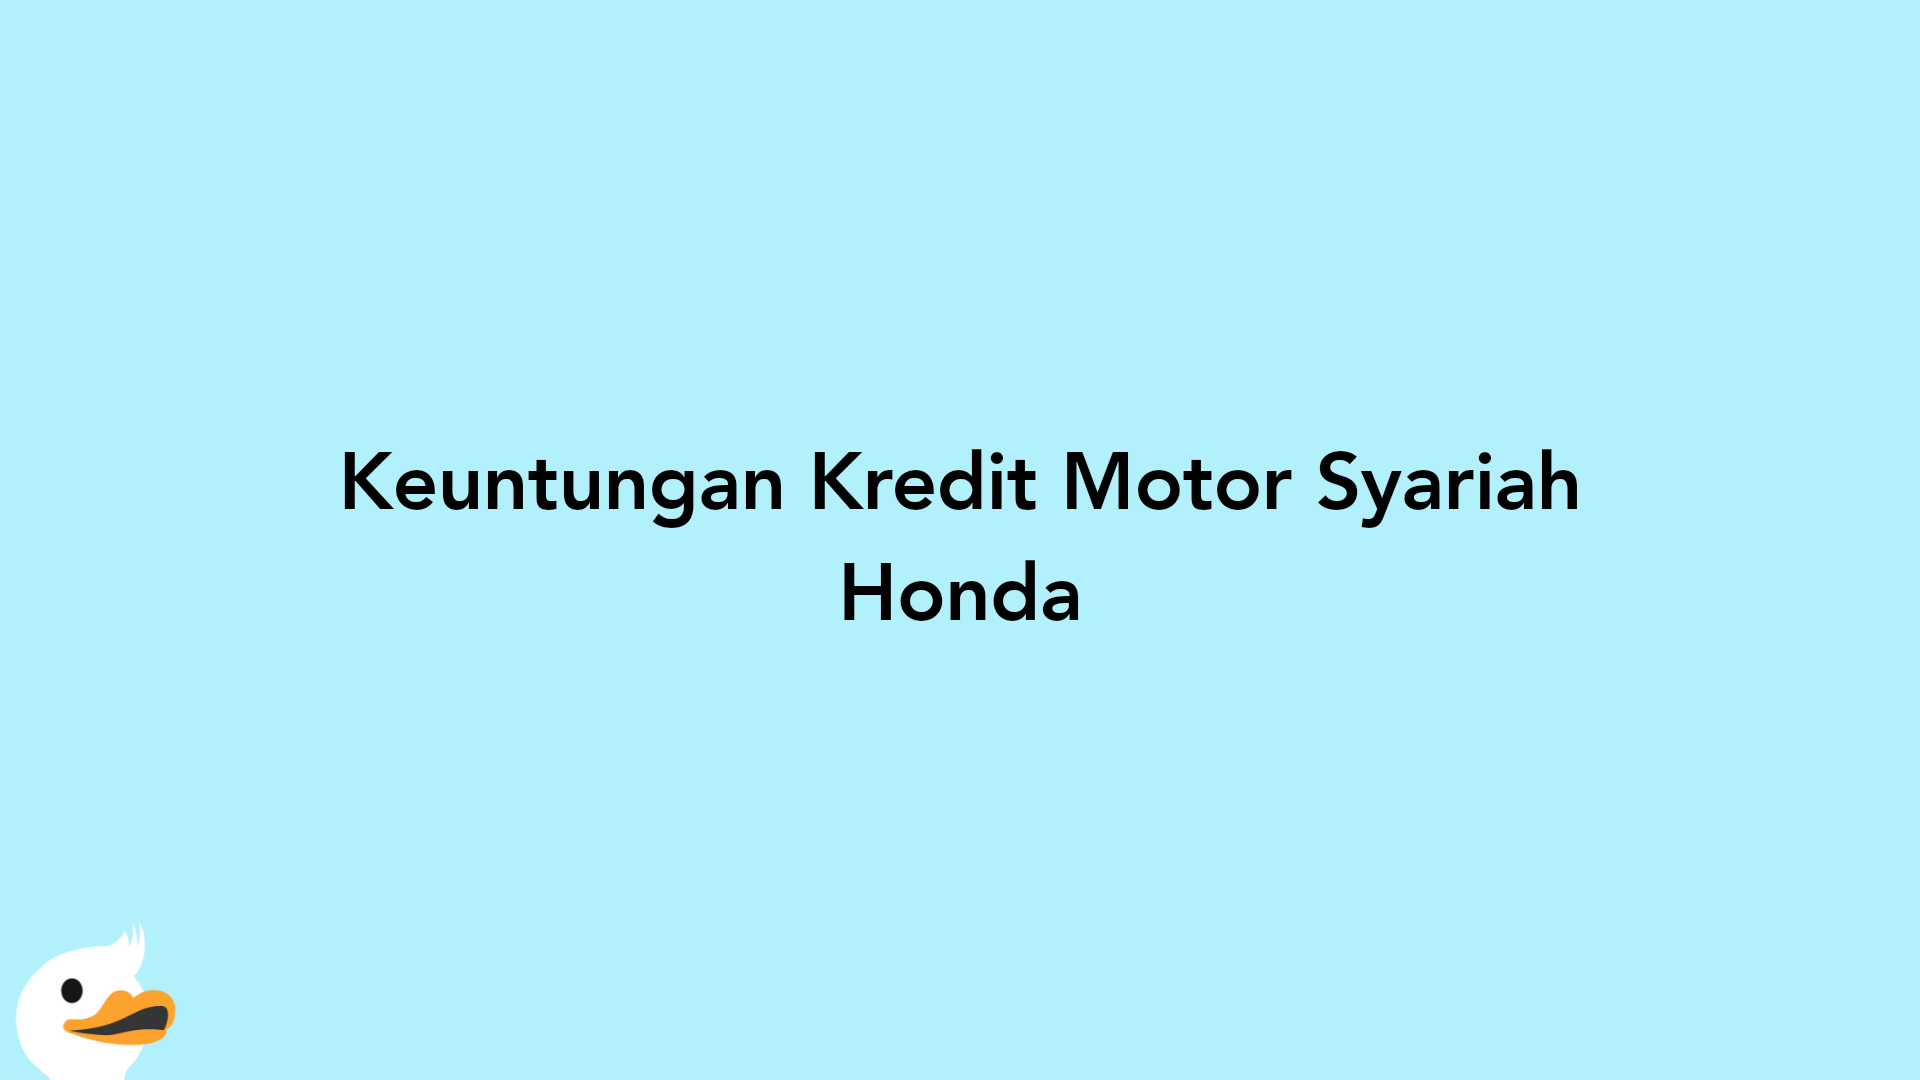 Keuntungan Kredit Motor Syariah Honda